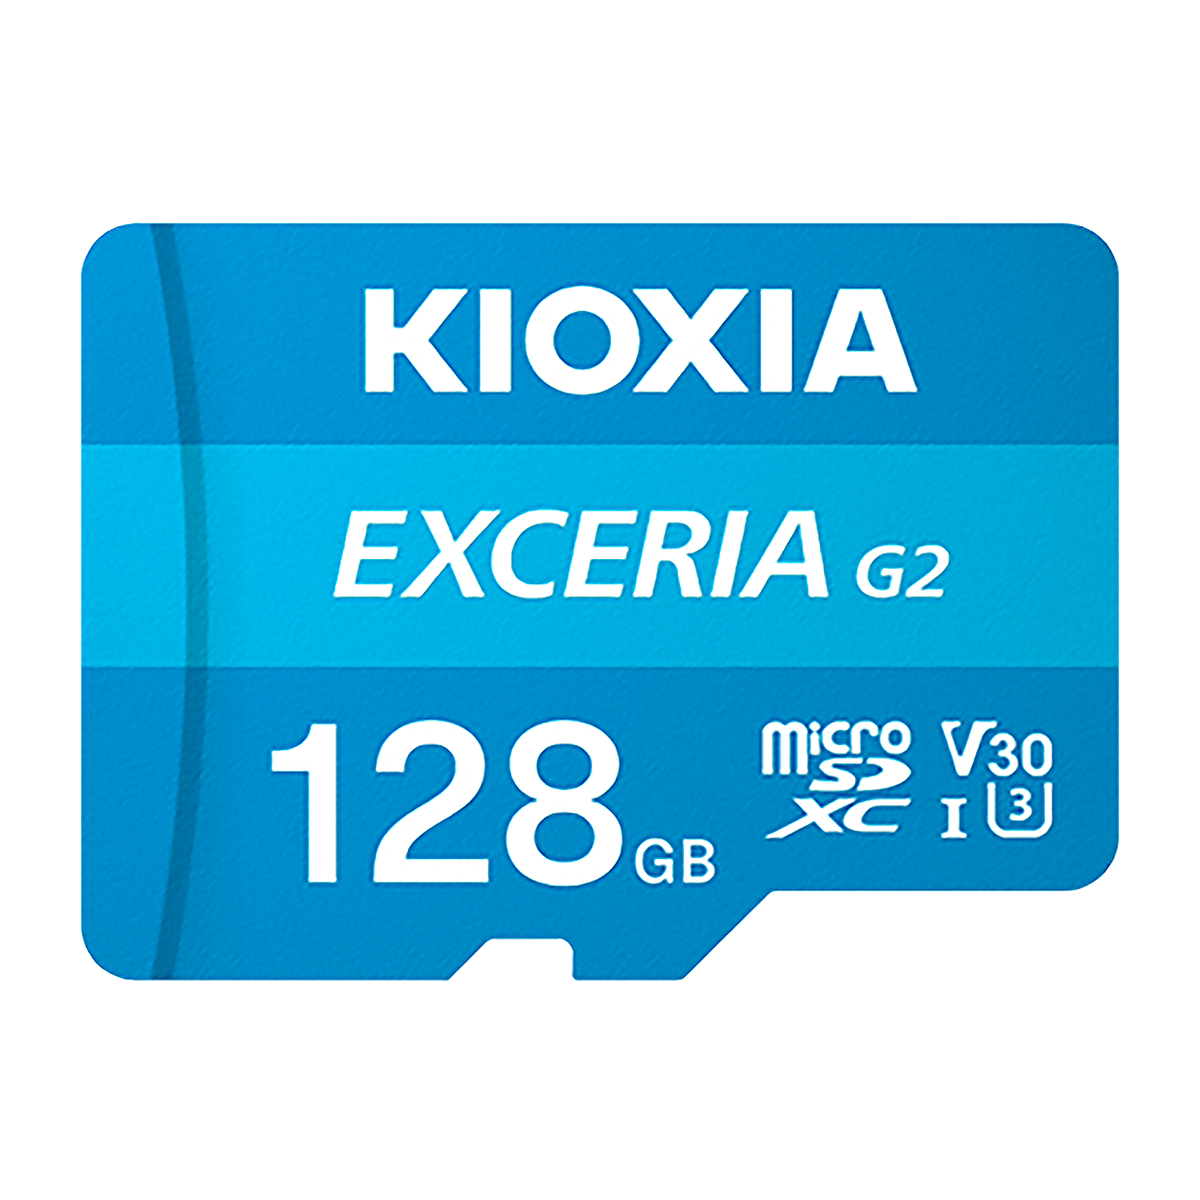 کارت حافظه microSDXC کیوکسیا مدل EXCERIA G2 کلاس 10 استاندارد UHS-I سرعت 100MBps ظرفیت 128 گیگابایت